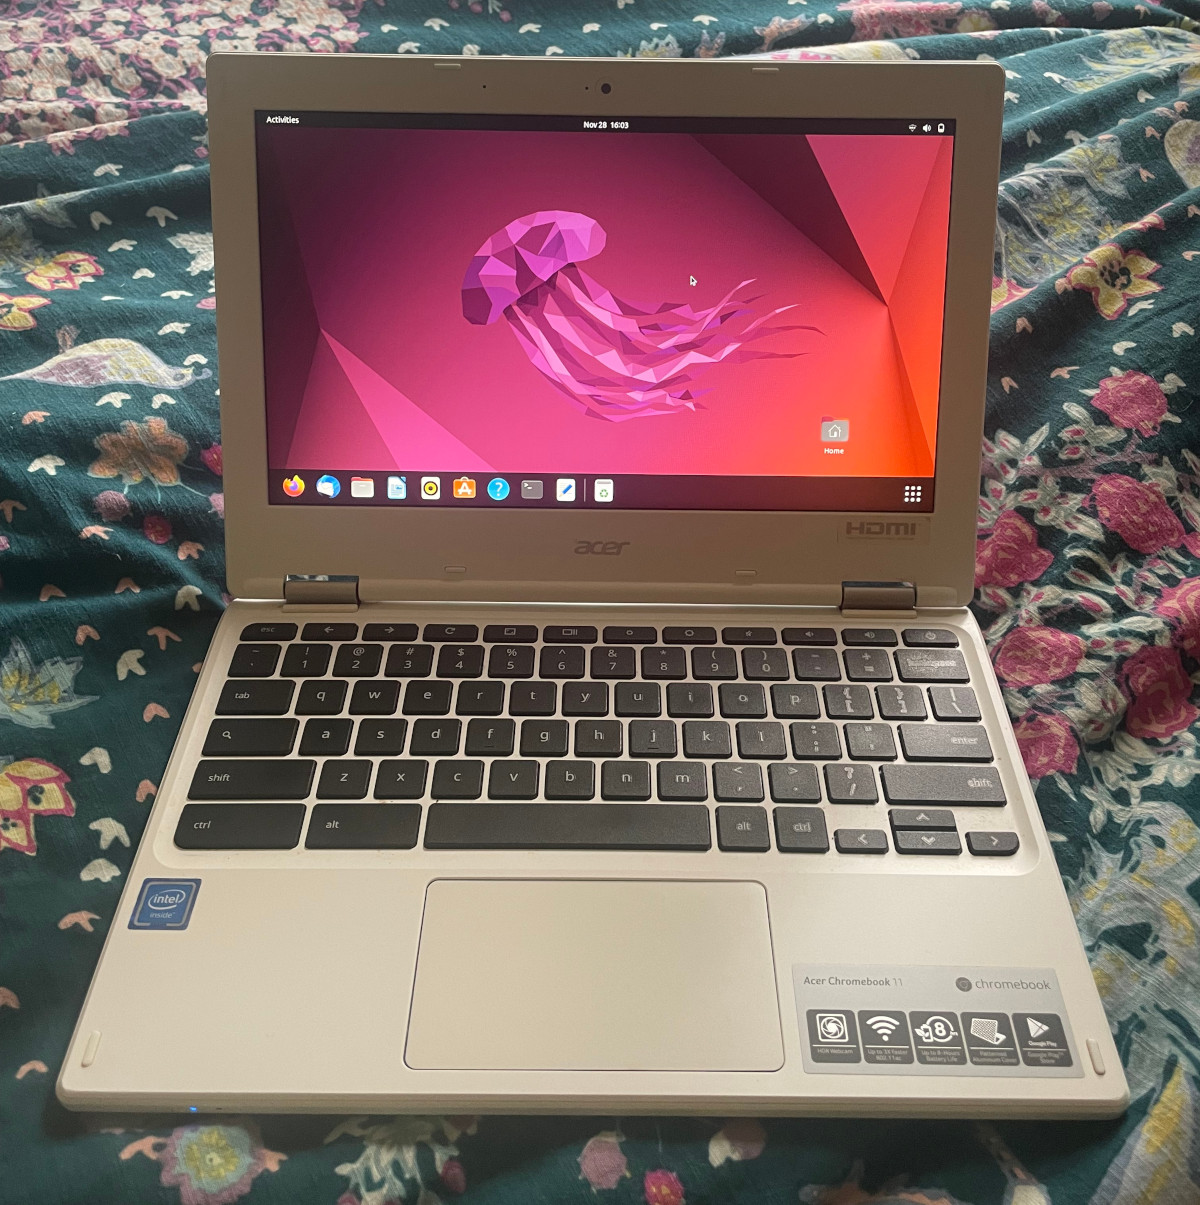 Chromebook on a bed displaying Ubuntu home screen